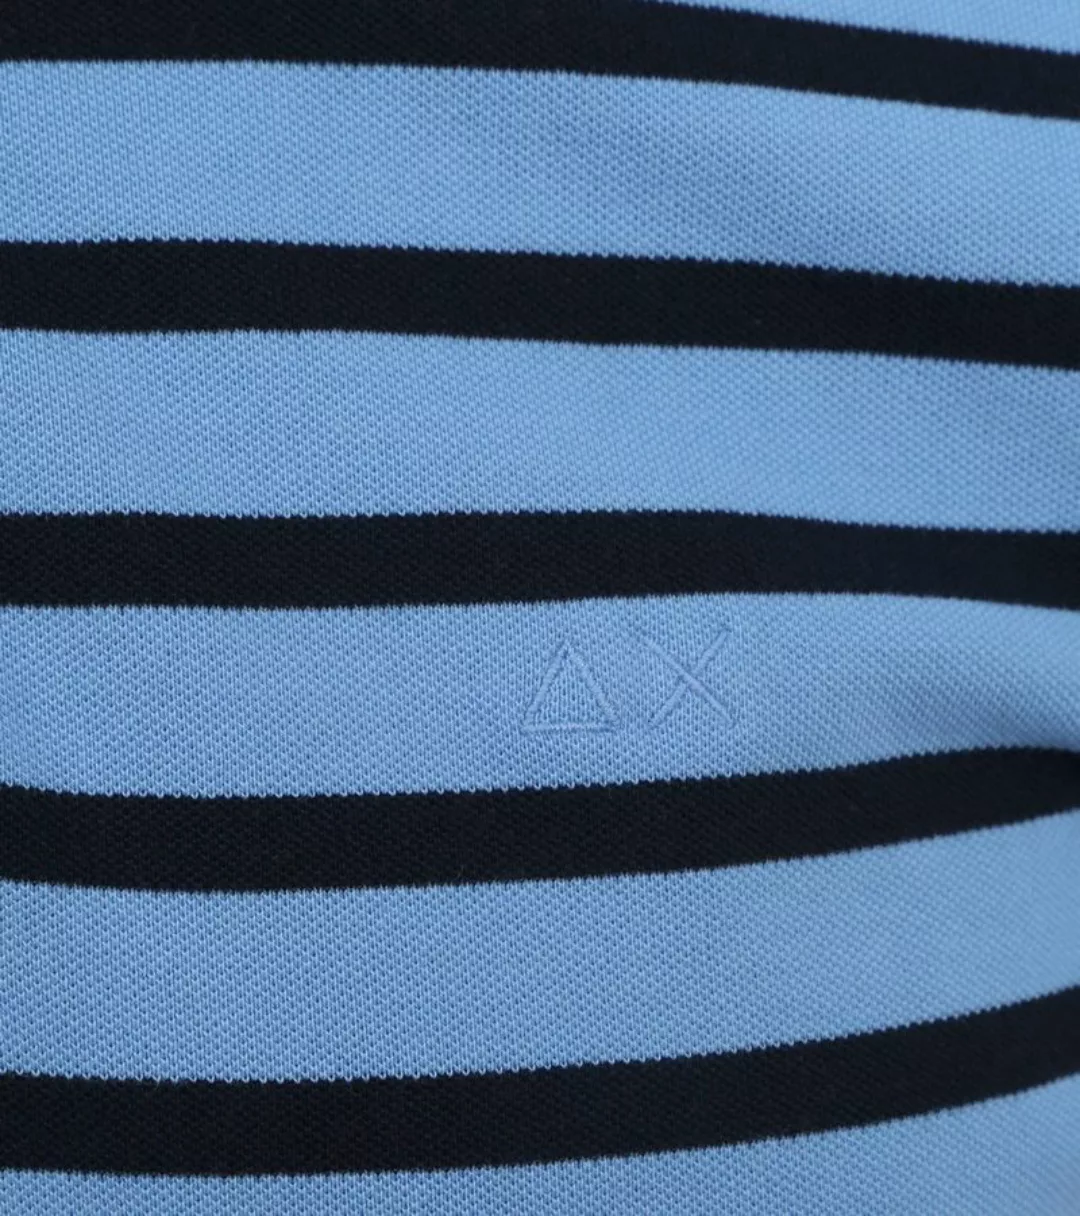 Sun68 Poloshirt Streifen Hellblau - Größe L günstig online kaufen